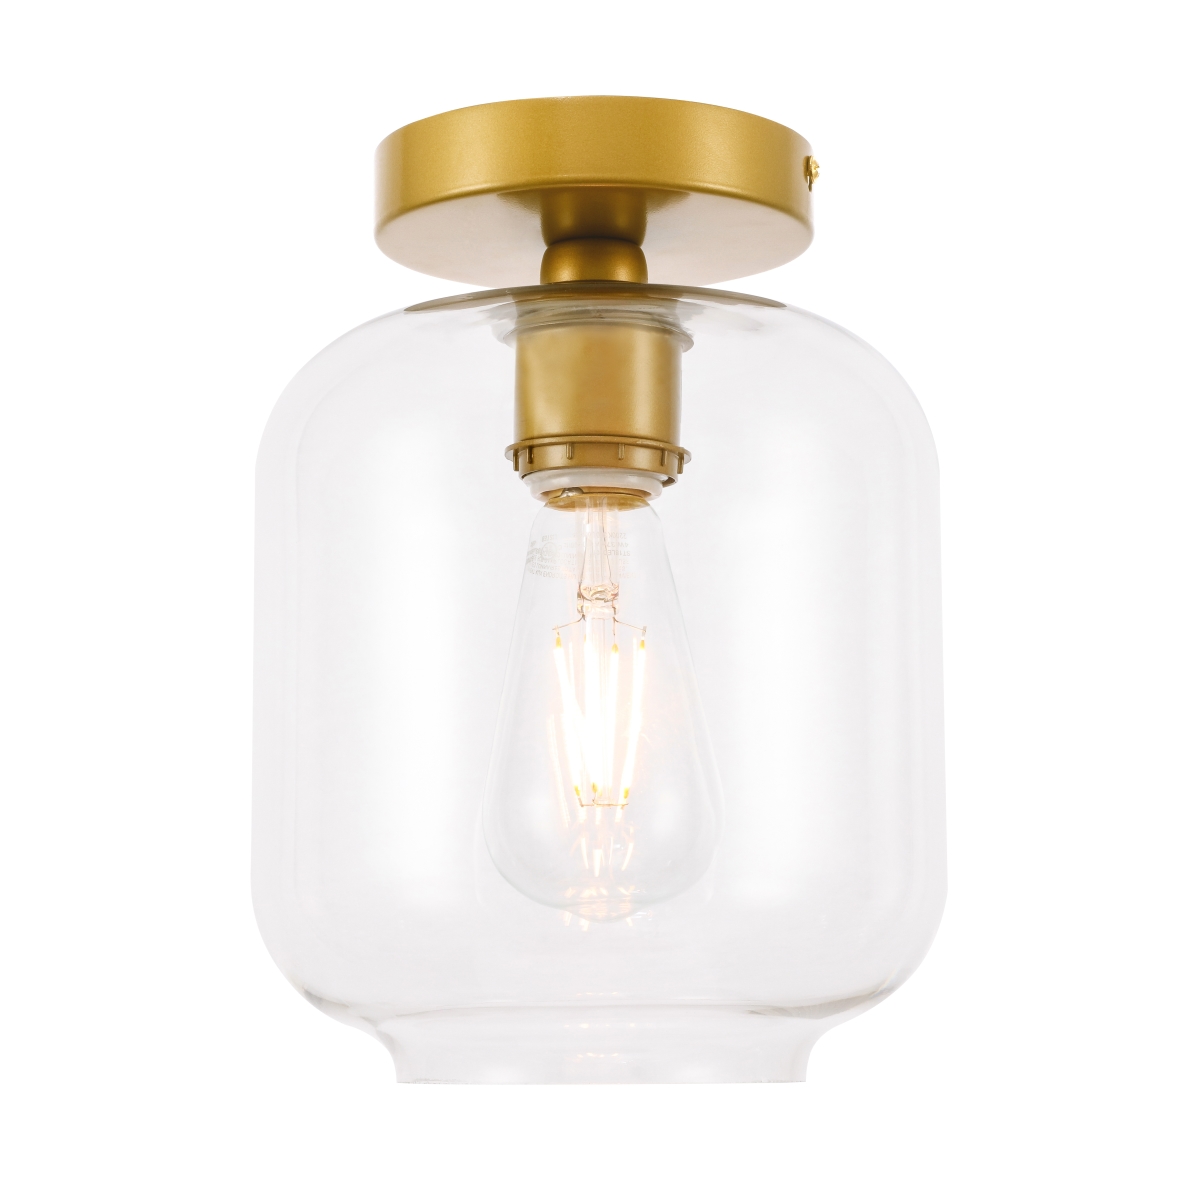 Ld2270br Collier 1 Light Brass & Clear Glass Flush Mount